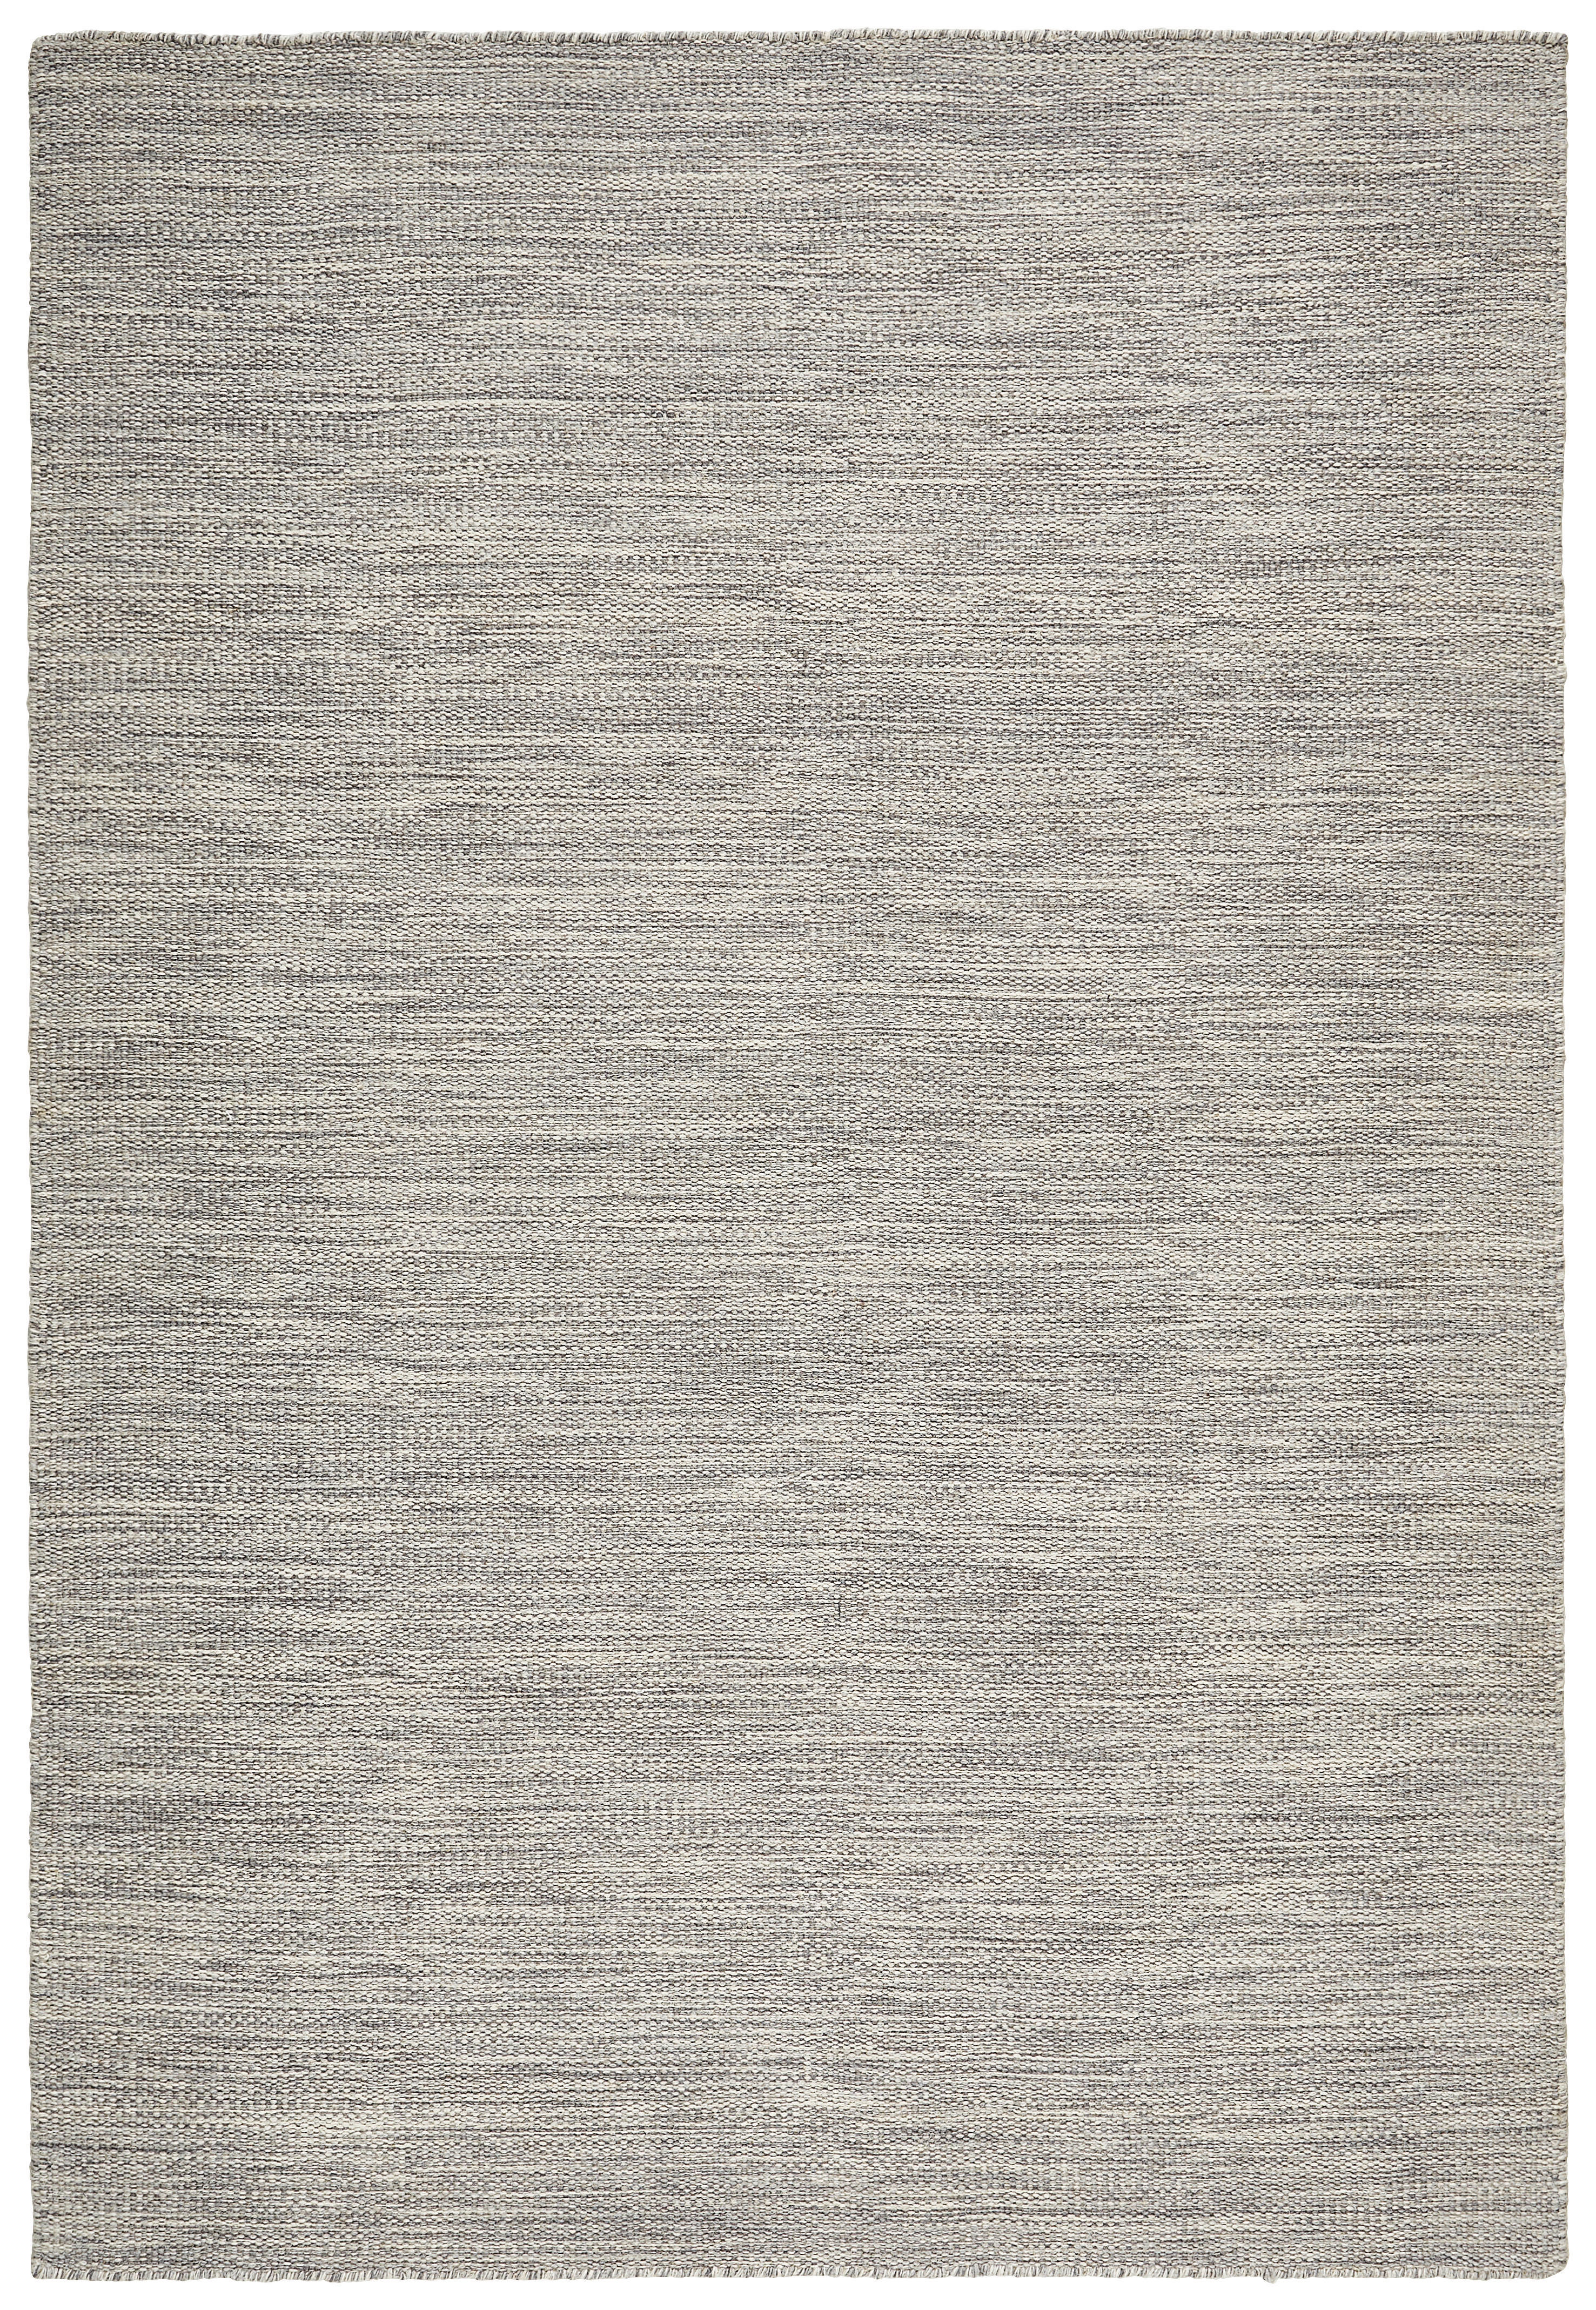 Linea Natura VLNĚNÝ KOBEREC, 120/180 cm, barvy stříbra - barvy stříbra